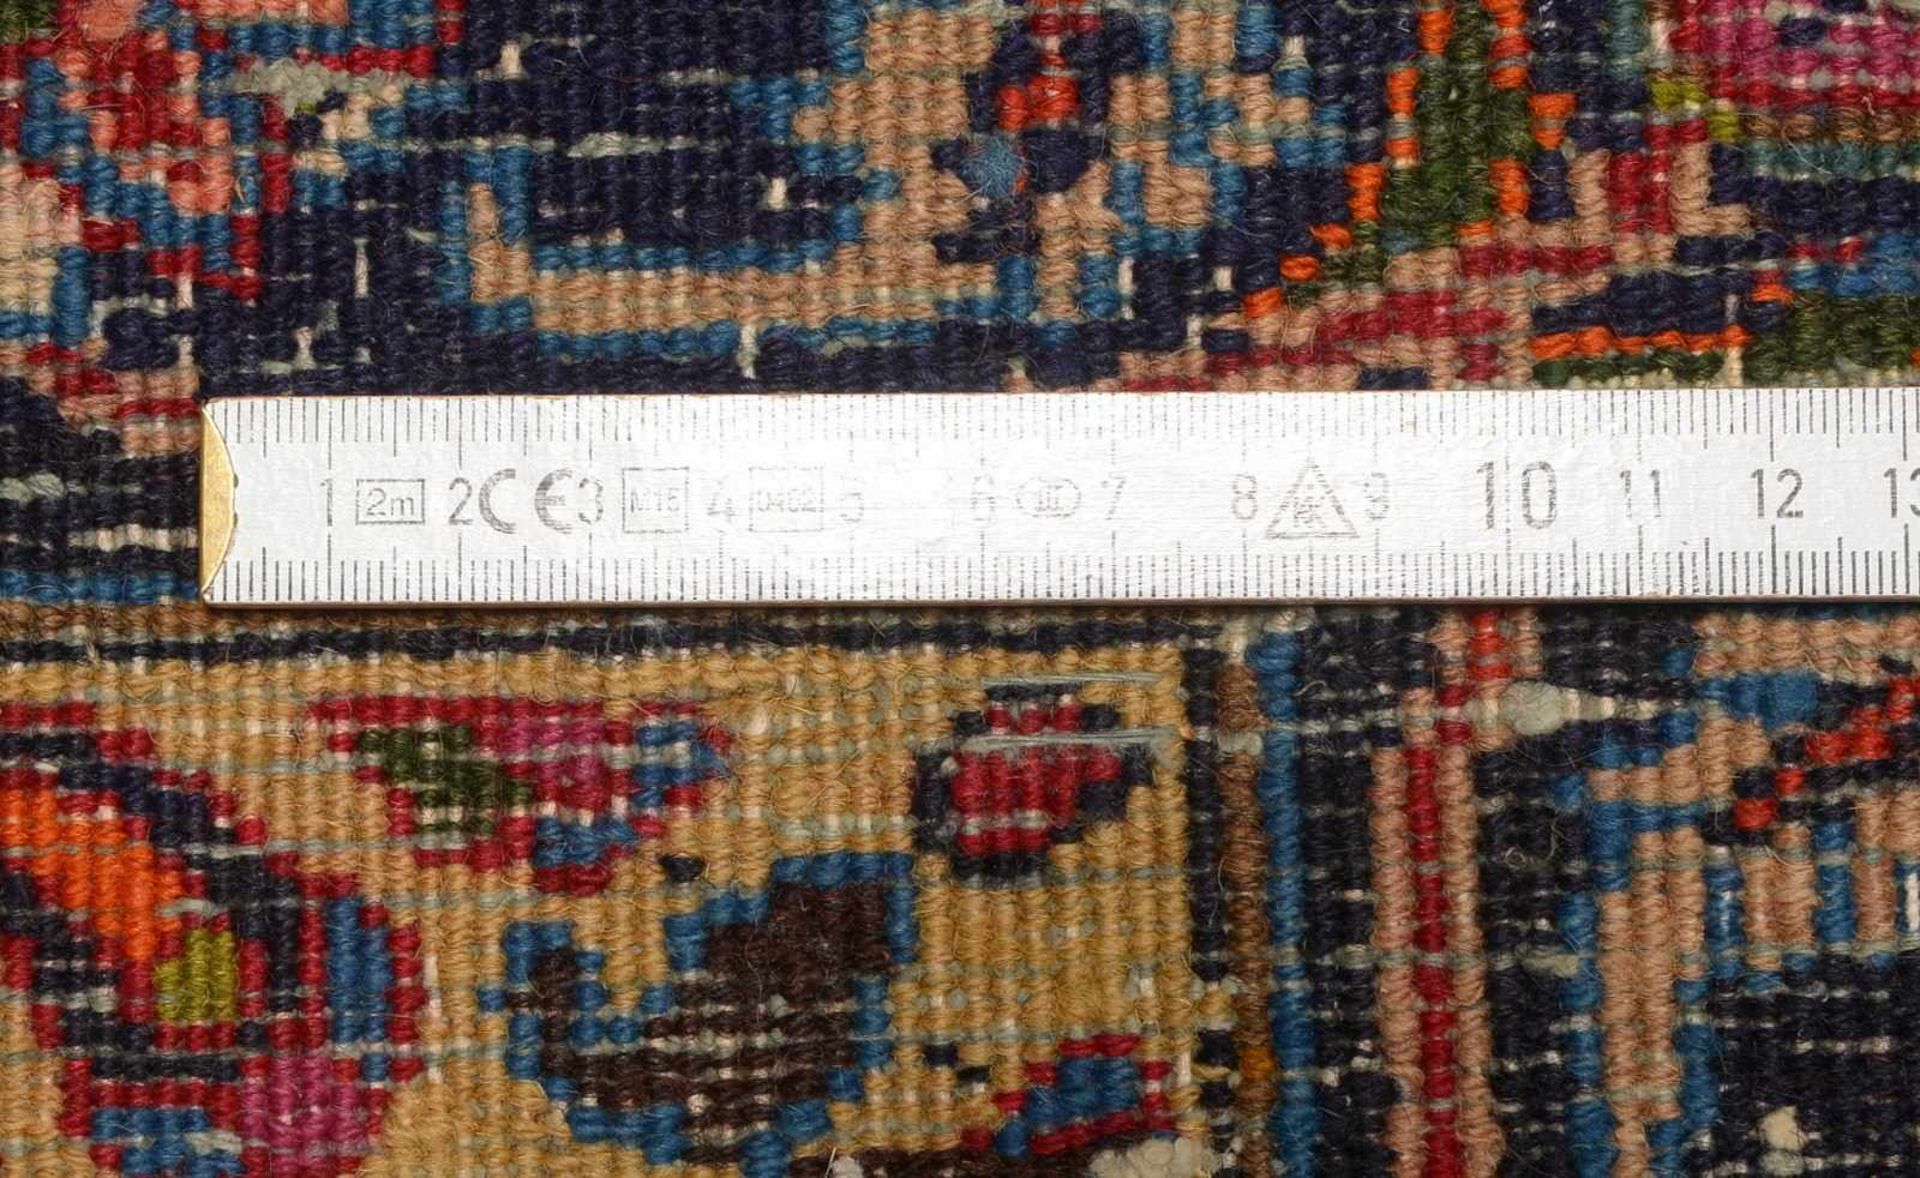 Mesched-Orientteppich, feste Knüpfung, ringsum komplett, Flor in gutem Zustand; Maße 300 x 200 cm - Bild 2 aus 2